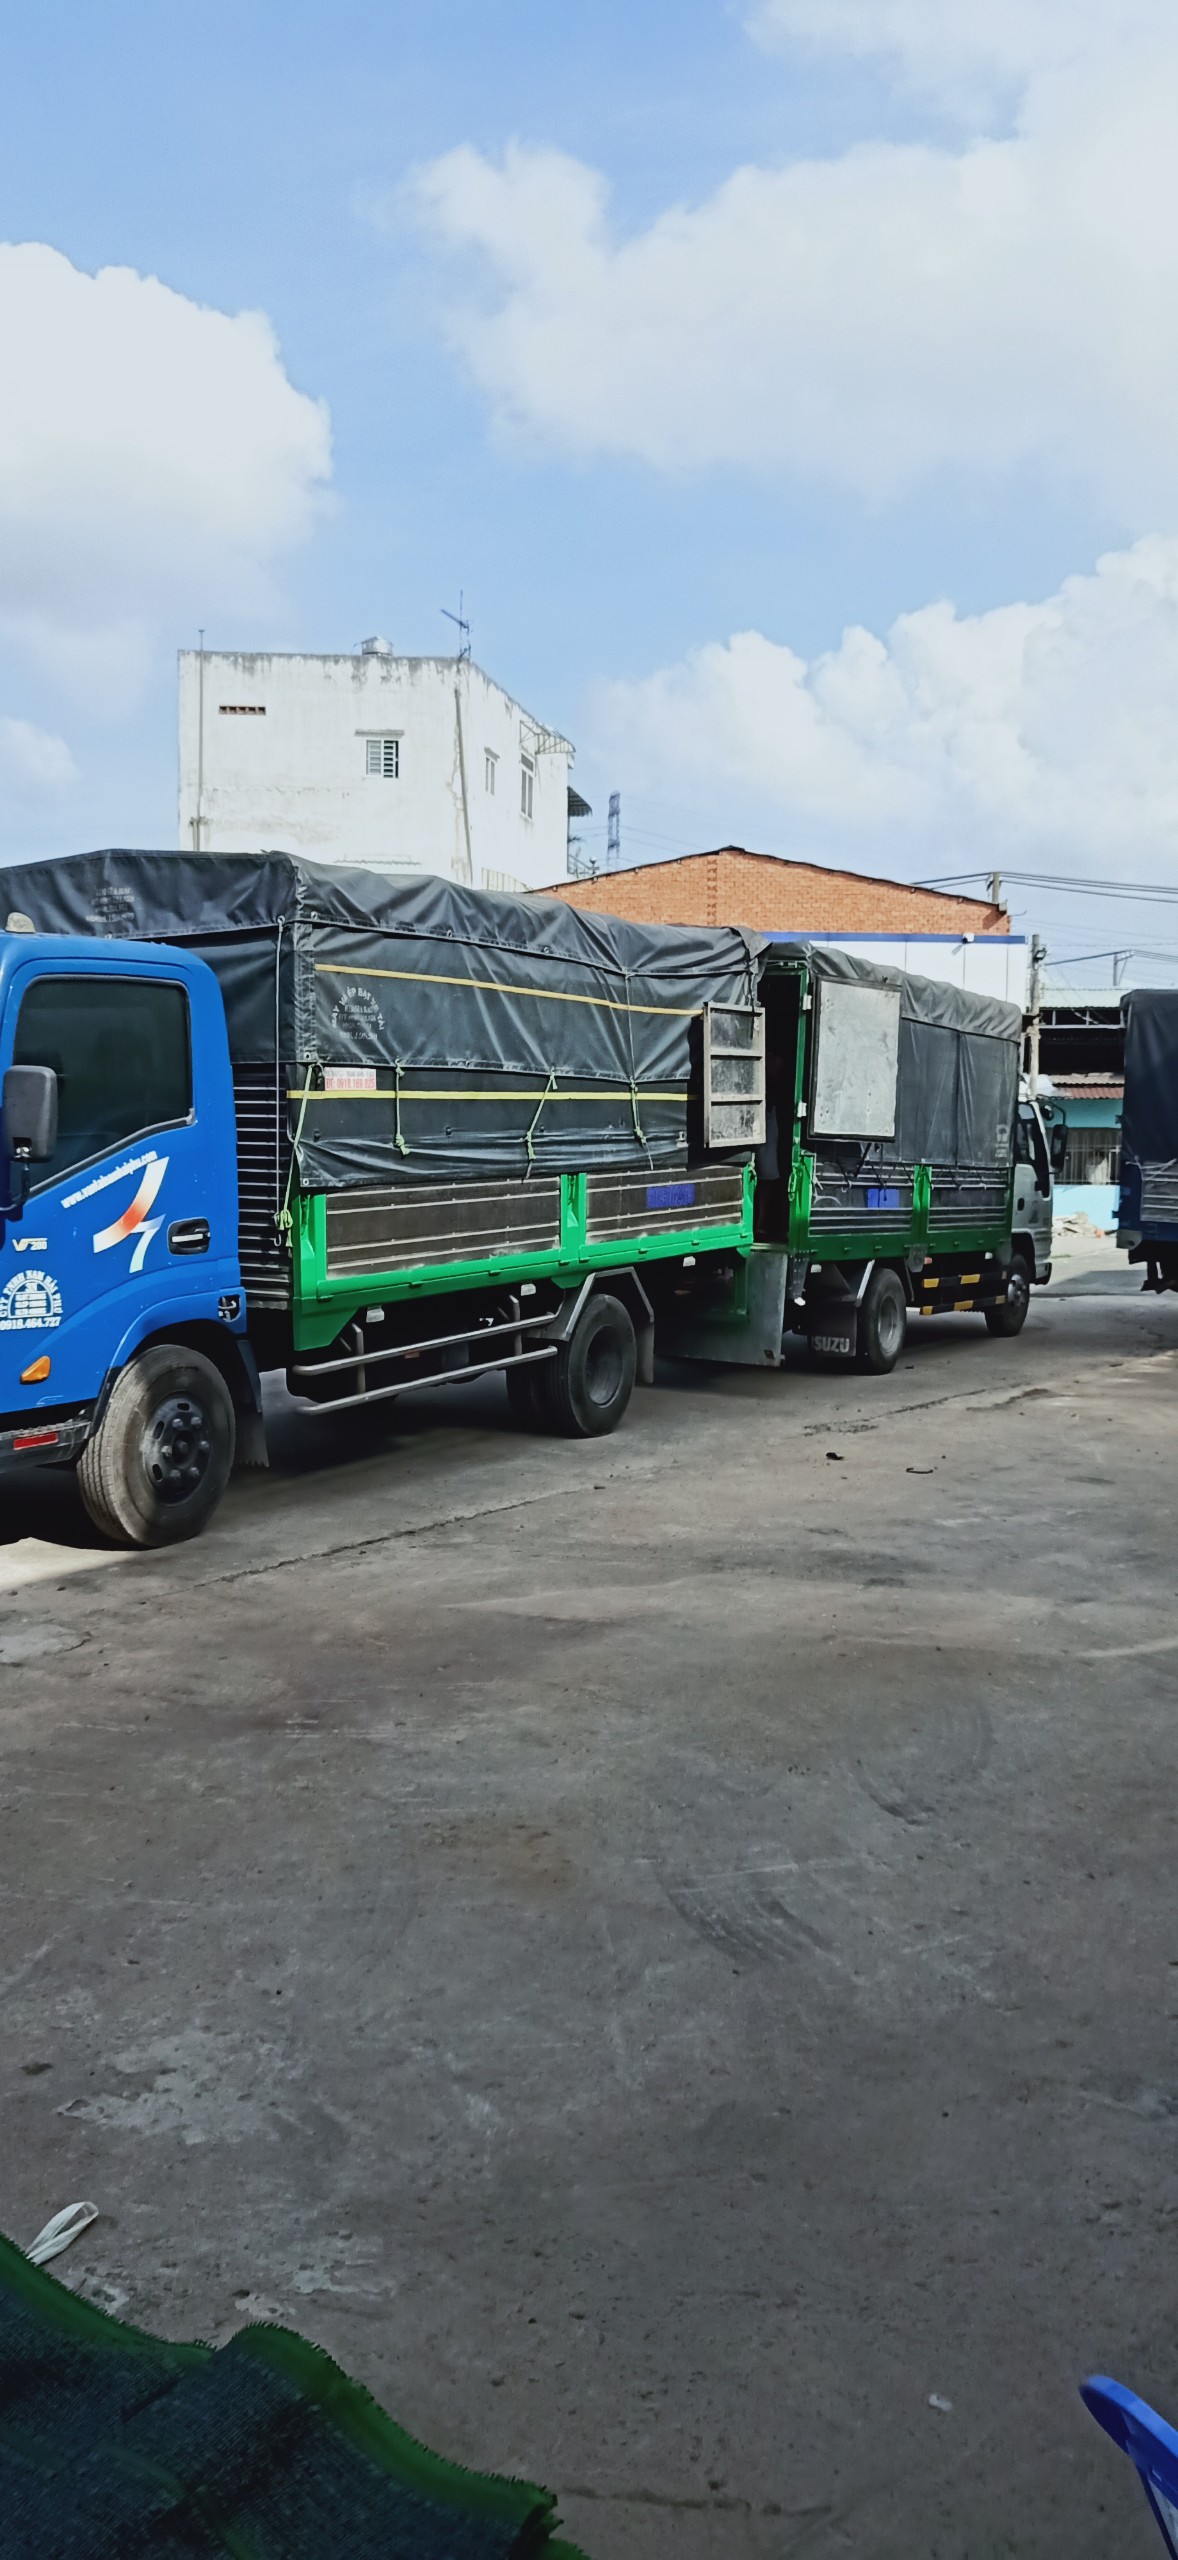 Dịch vụ vận chuyển hàng Sài Gòn – Hà Nội nhanh chóng. Công ty vận tải Nam Hải Phú cung cấp dịch vụ vận chuyển uy tín và chuyên nghiệp.